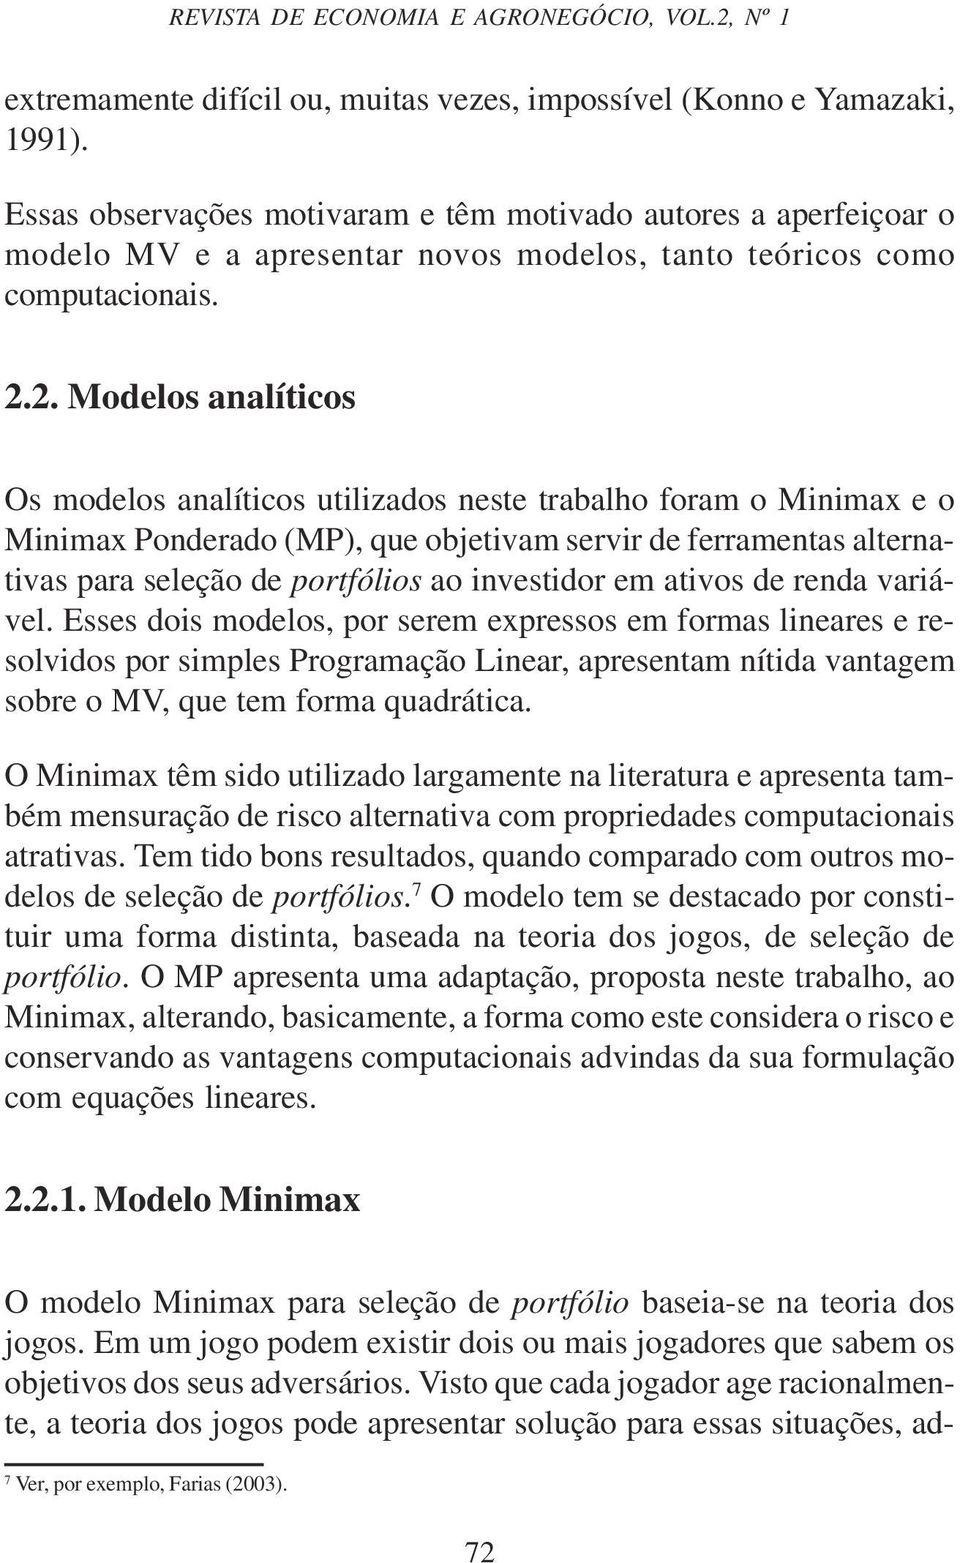 2. Modelos analíticos Os modelos analíticos utilizados neste trabalho foram o Minimax e o Minimax Ponderado (MP), que objetivam servir de ferramentas alternativas para seleção de portfólios ao